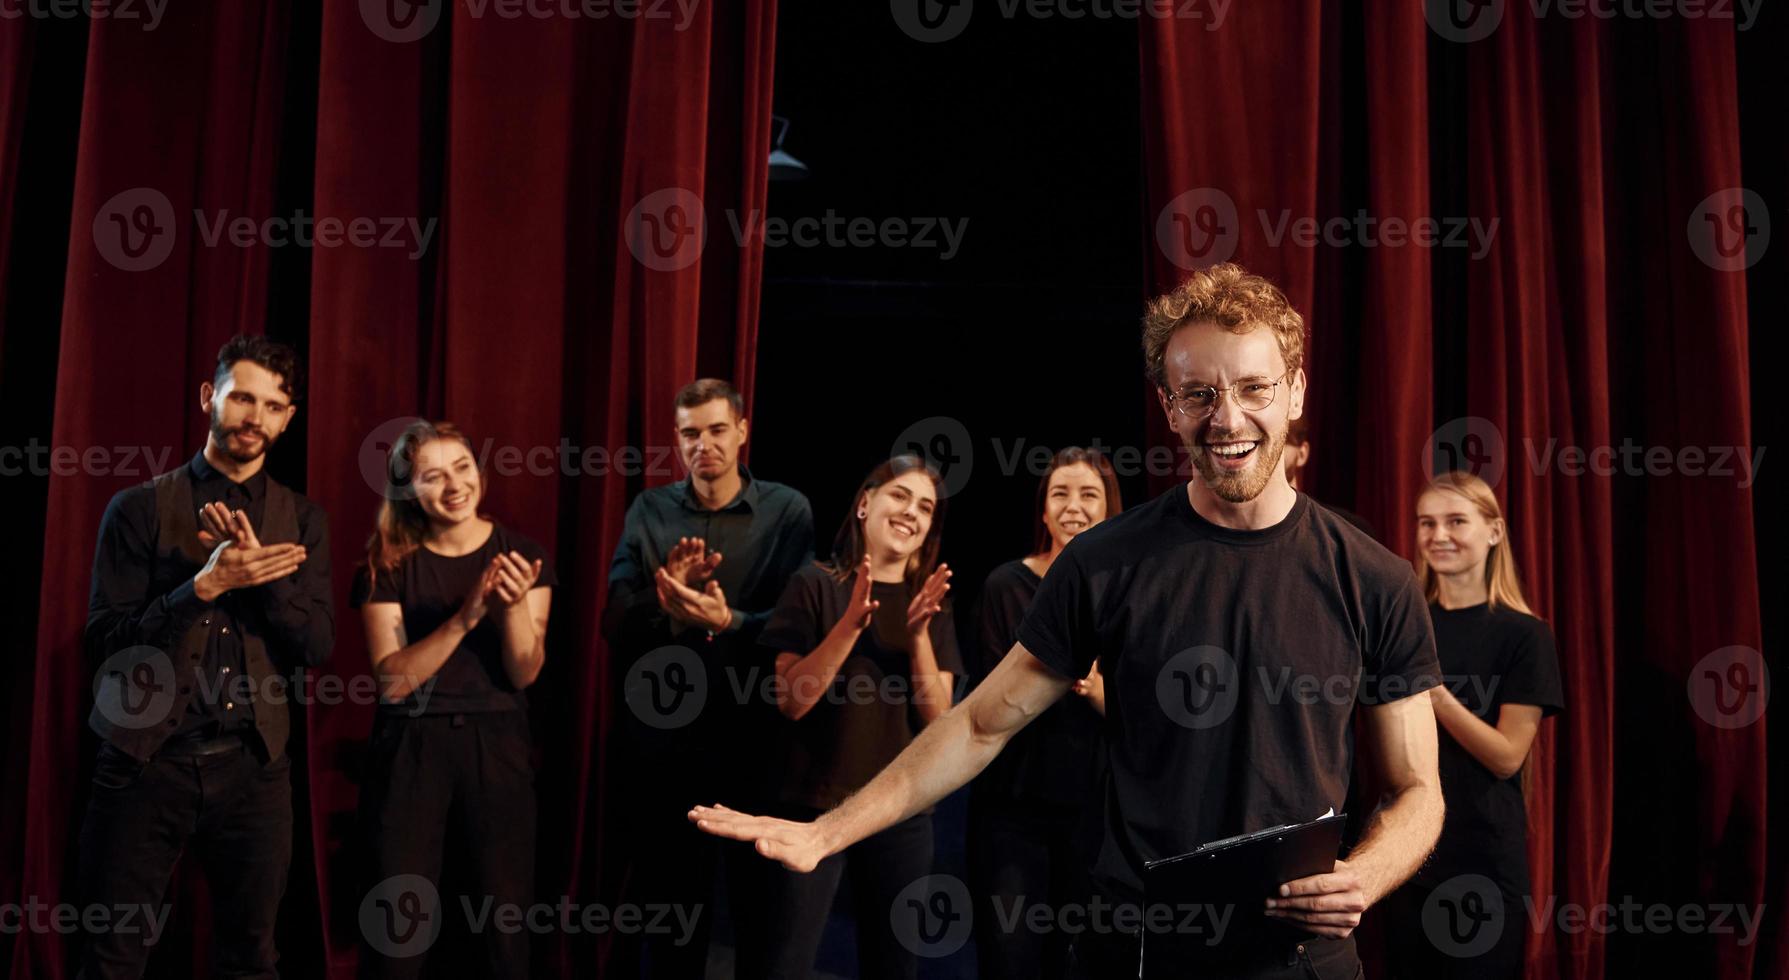 homme avec bloc-notes pratique son rôle. groupe d'acteurs vêtus de vêtements de couleur sombre en répétition au théâtre photo